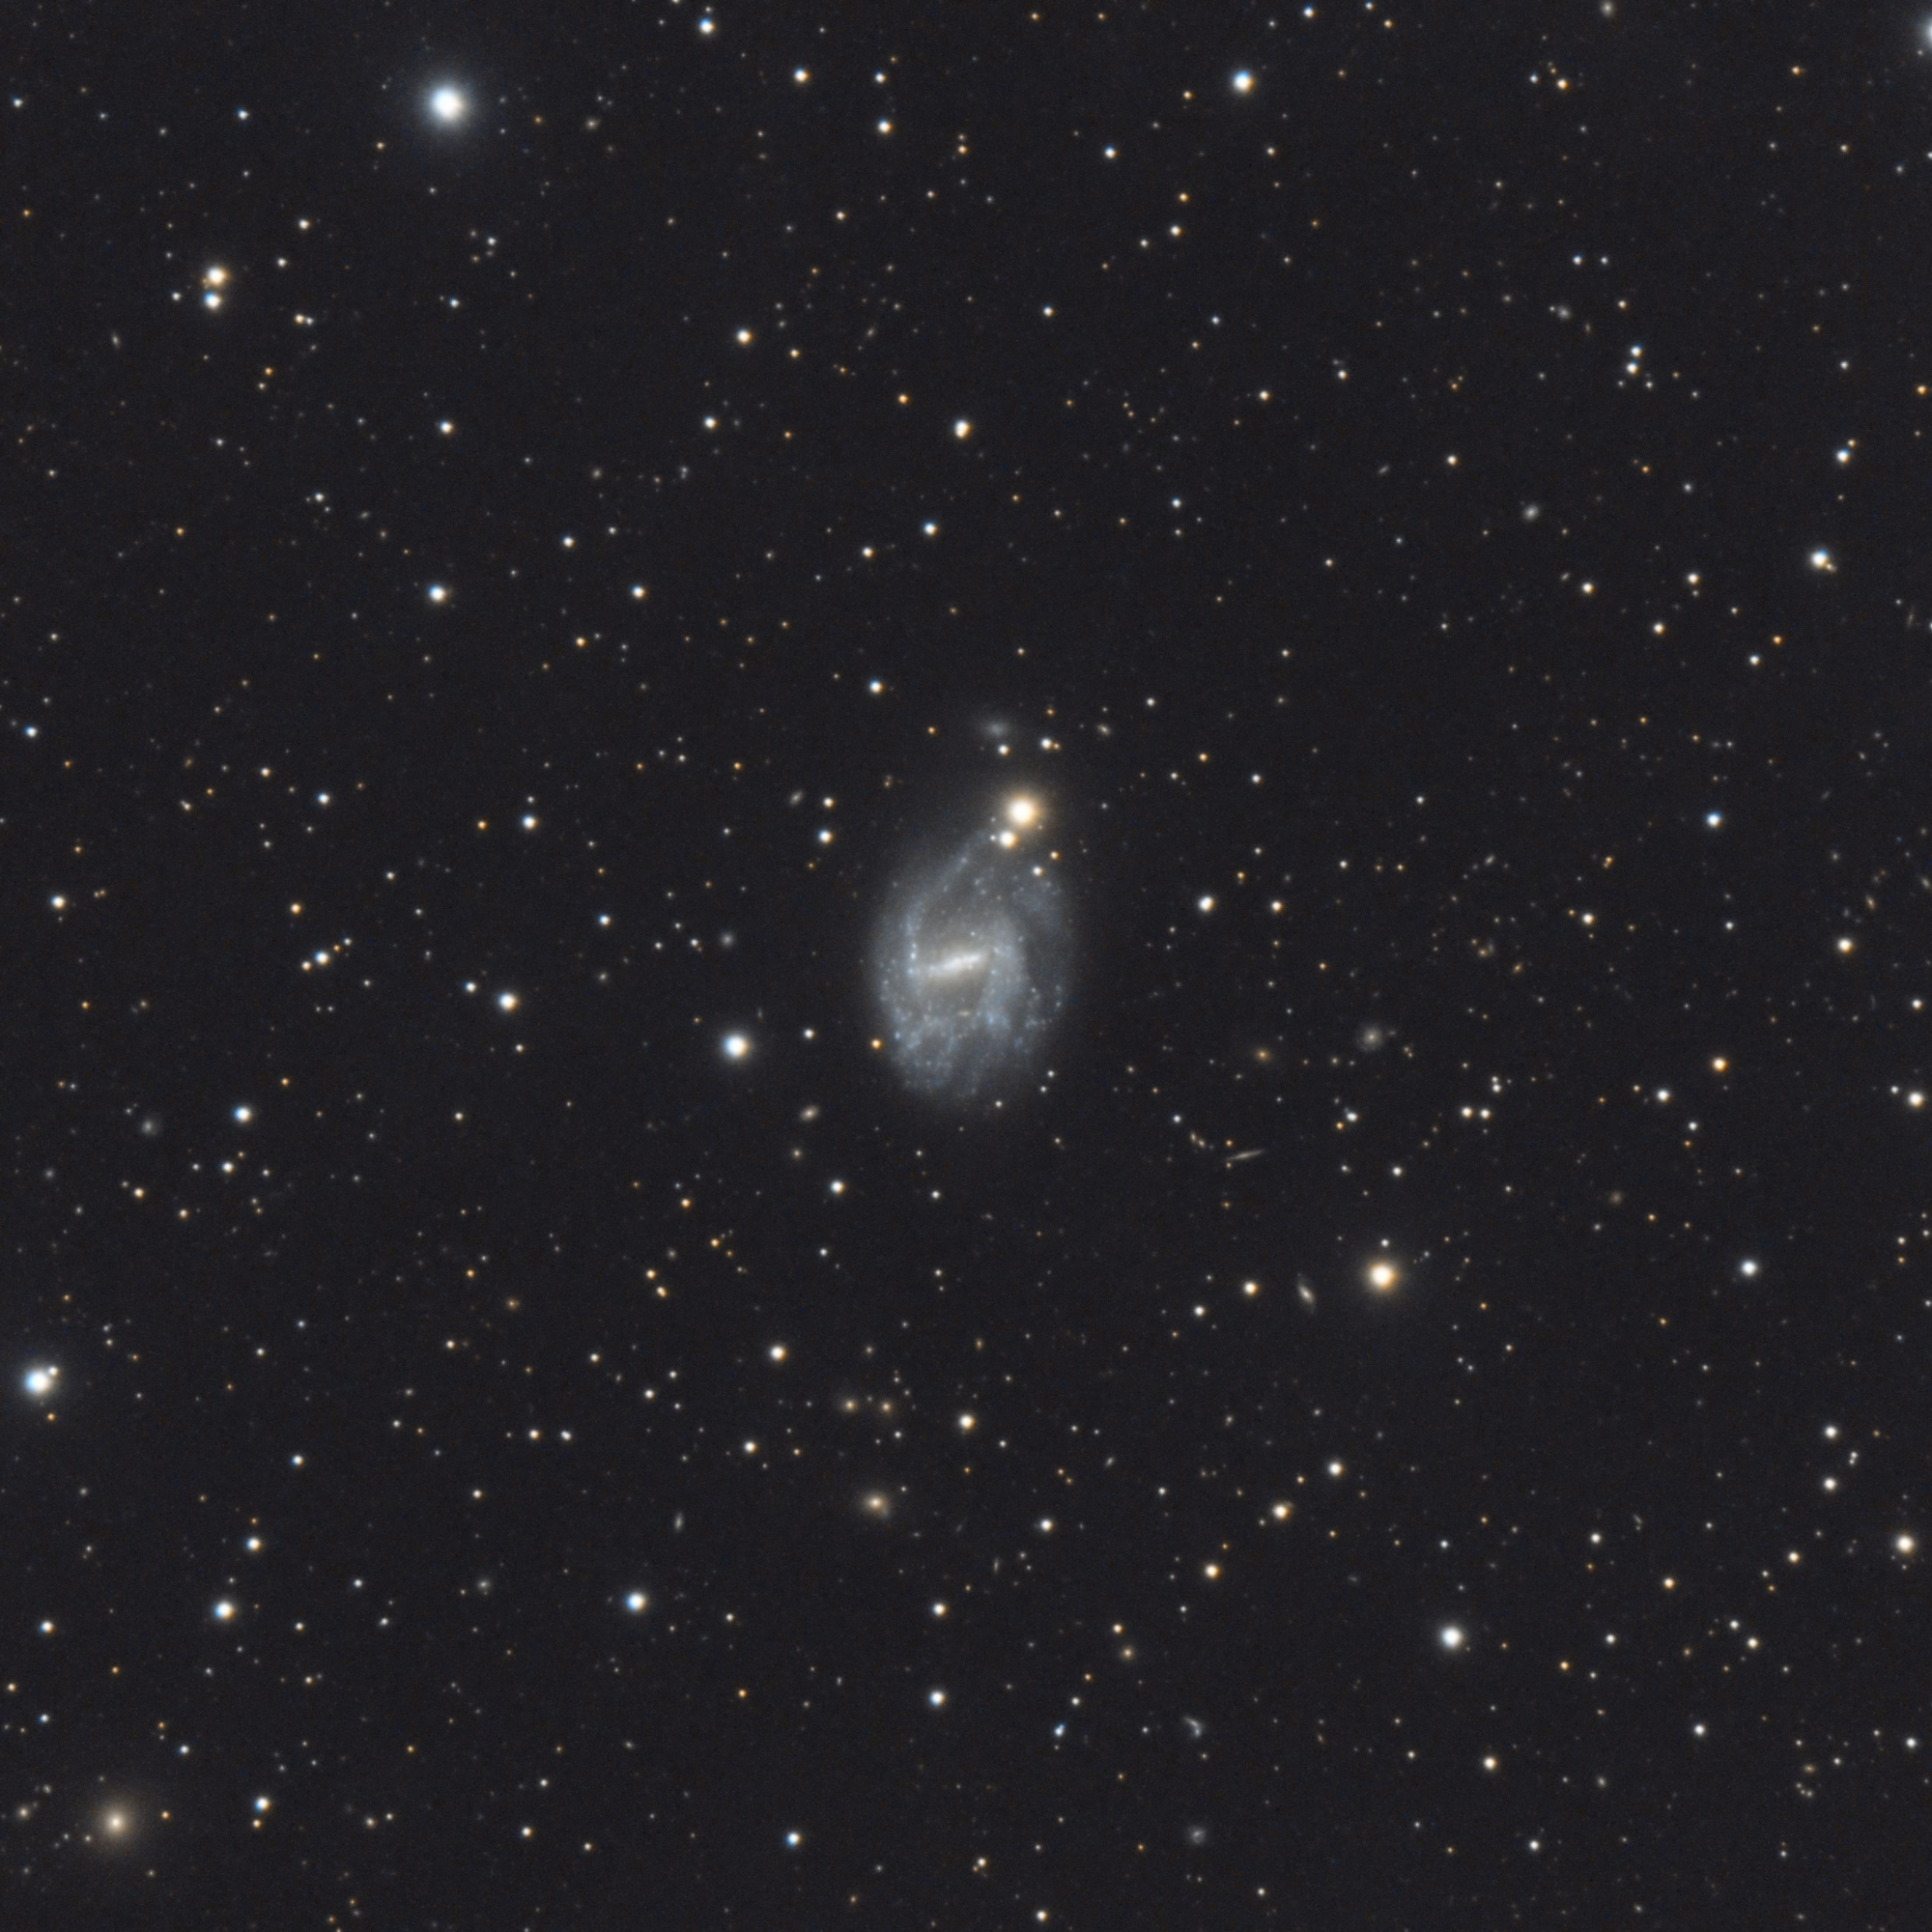 5c53ed5fdb97a_NGC7741.thumb.jpg.409d40fa06a55210ff3f835fd2eeed41.jpg